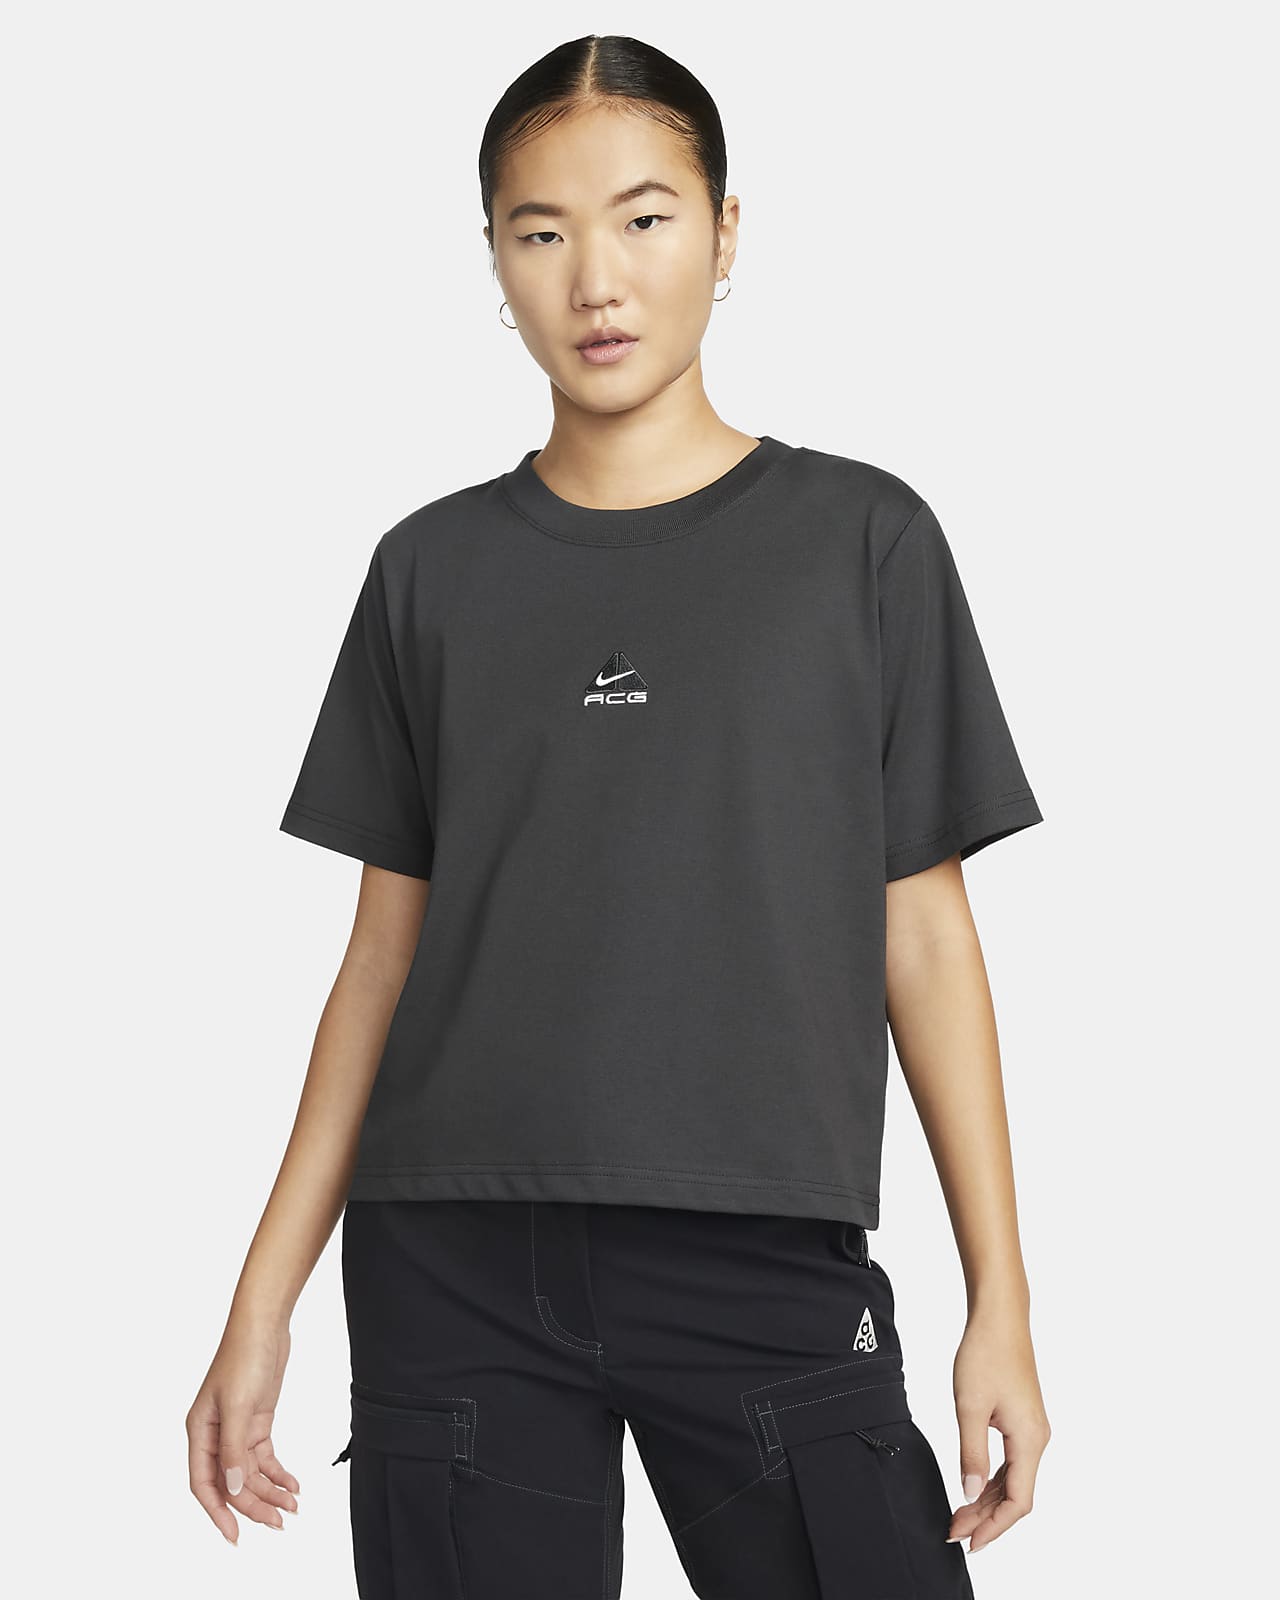 Nike ACG 女子短袖T恤